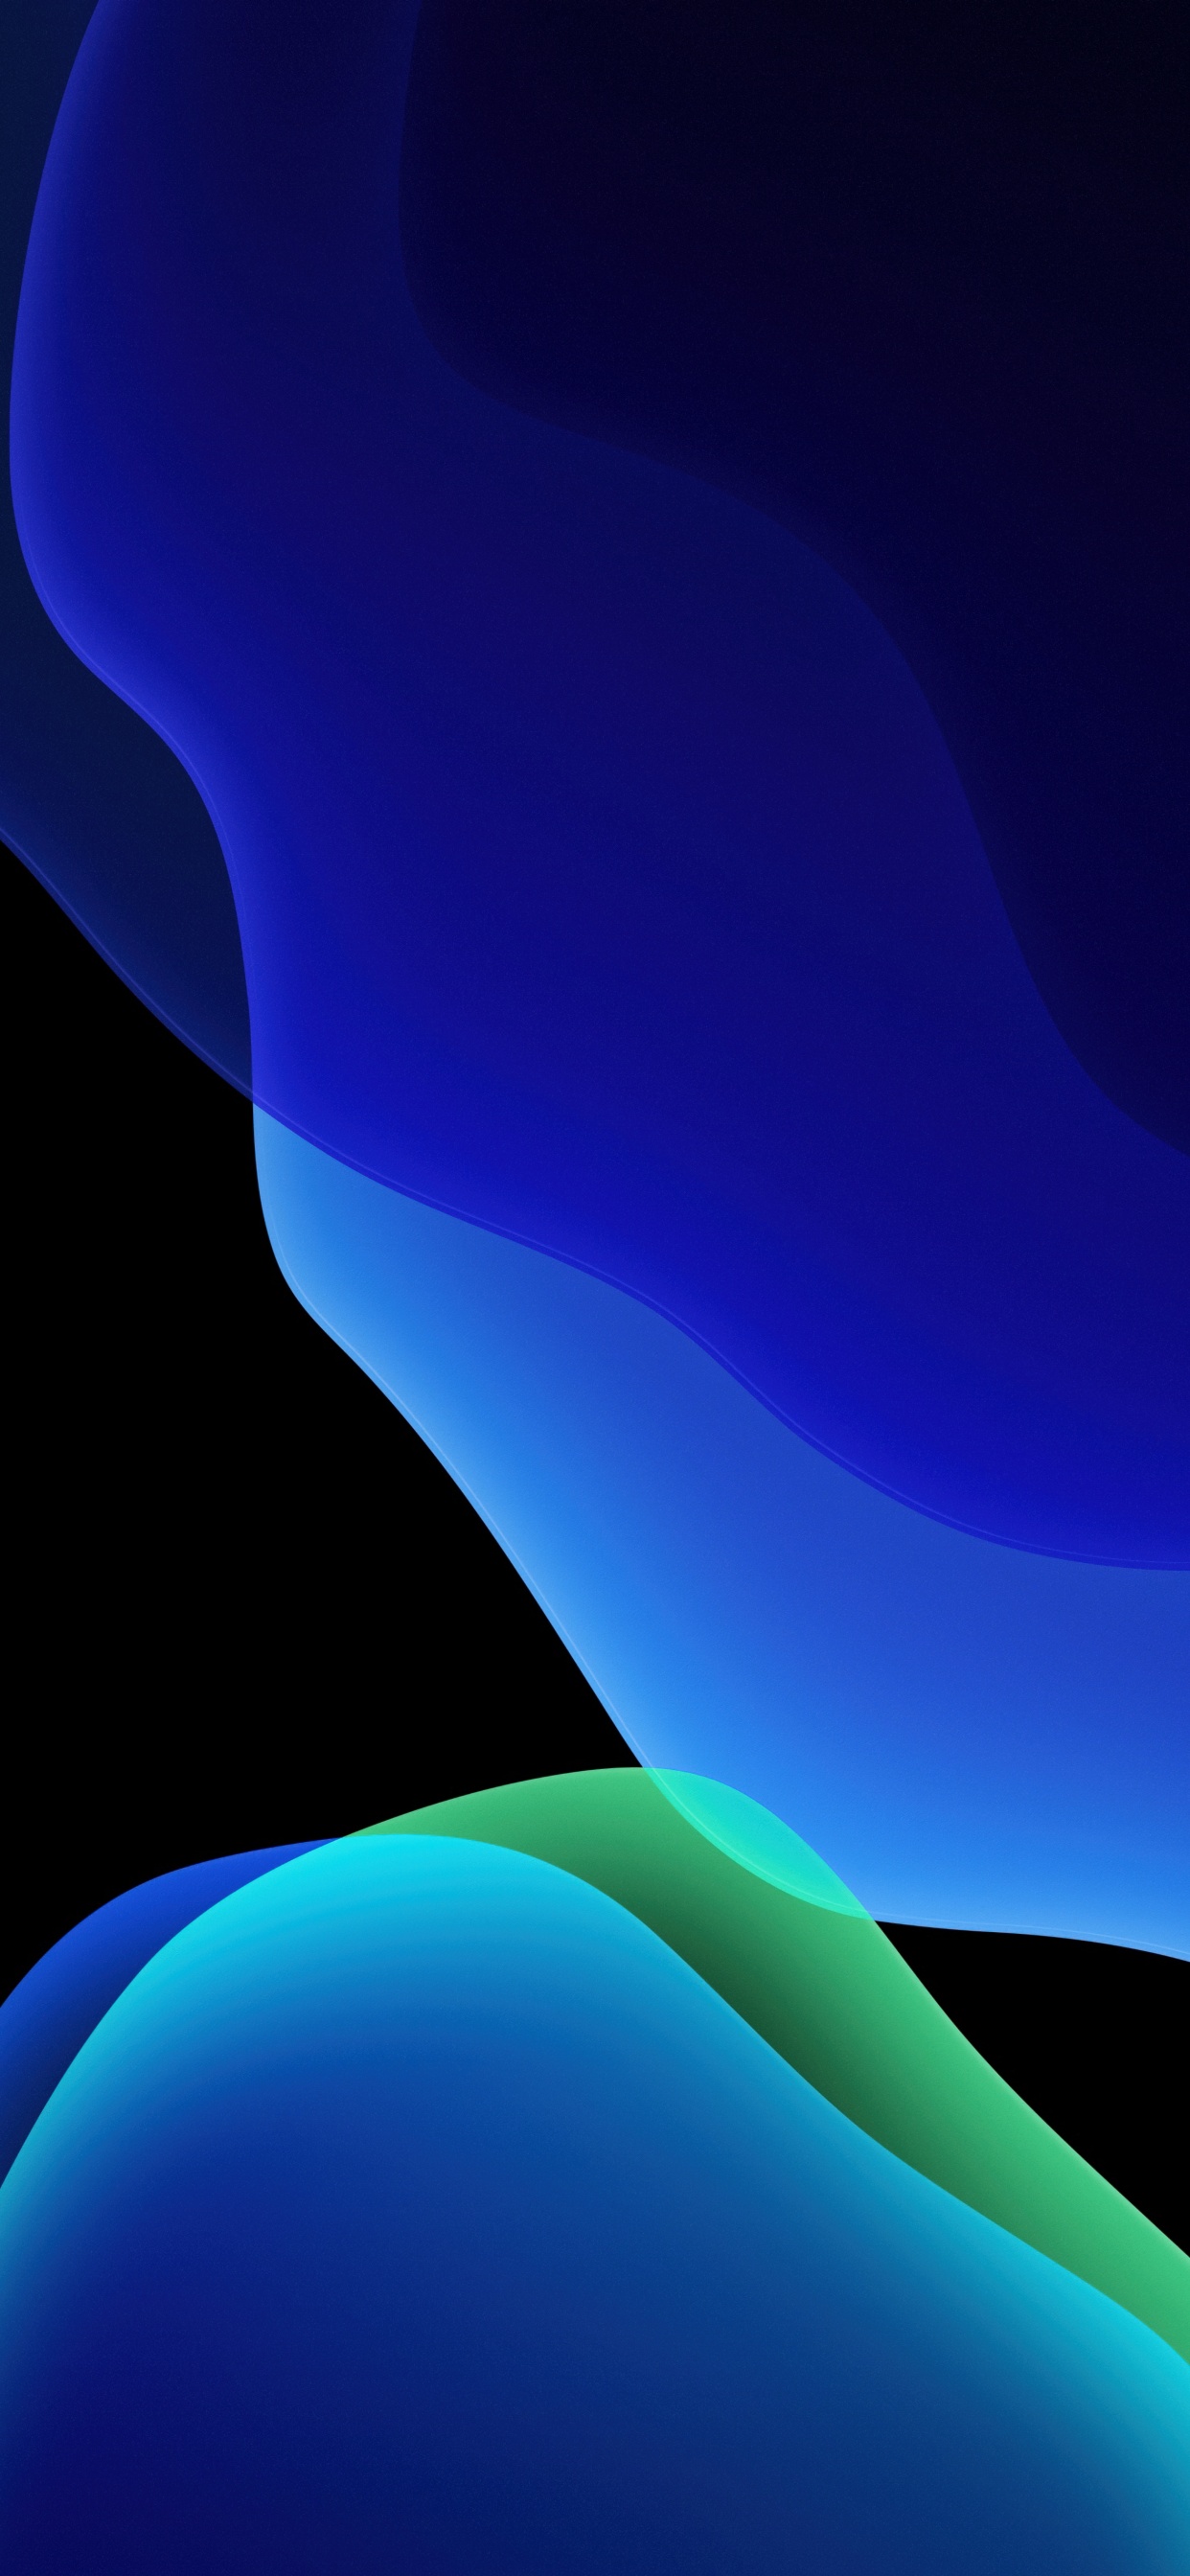 Hình nền iOS 13 4K, Stock, iPadOS, Blue, Abstract và #795 là một kho lưu trữ các hình nền đẹp và độc đáo có độ phân giải cao. Khám phá ngay những hình nền 4K, màu xanh độc đáo, hay những hình ảnh trừu tượng để làm mới giao diện của bạn.